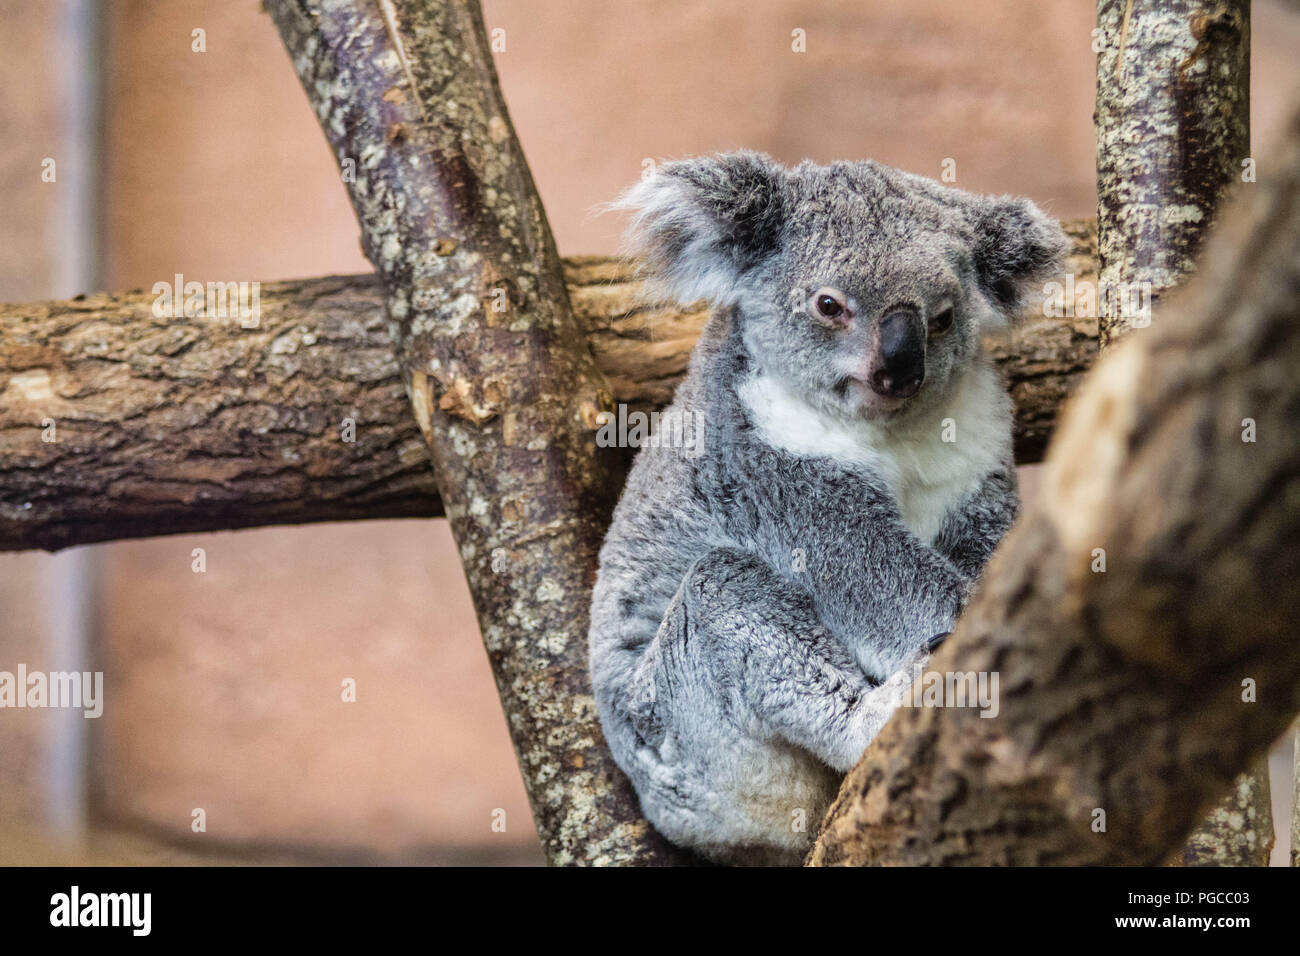 Le koala (Phascolarctos cinereus), appelé aussi Paresseux australien, est une espèce de marsupial arboricole herbivore endémique d'Australie et le seu Stock Photo